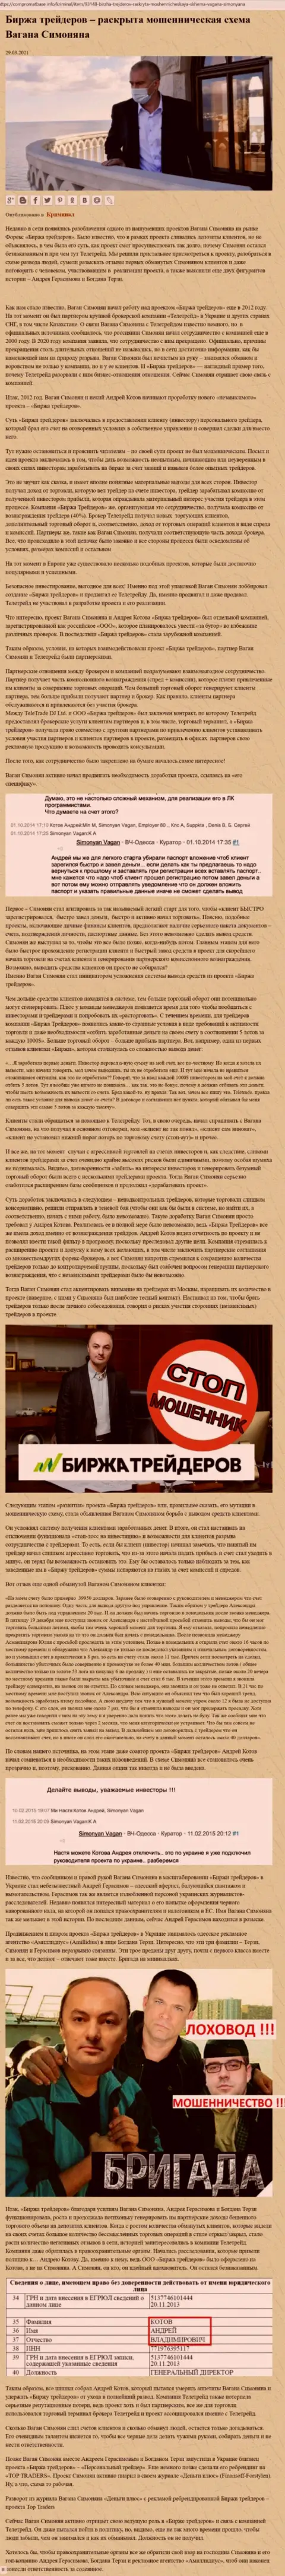 Рекламой организации B-Traders, тесно связанной с мошенниками ТелеТрейд Орг, также занимался Богдан Терзи